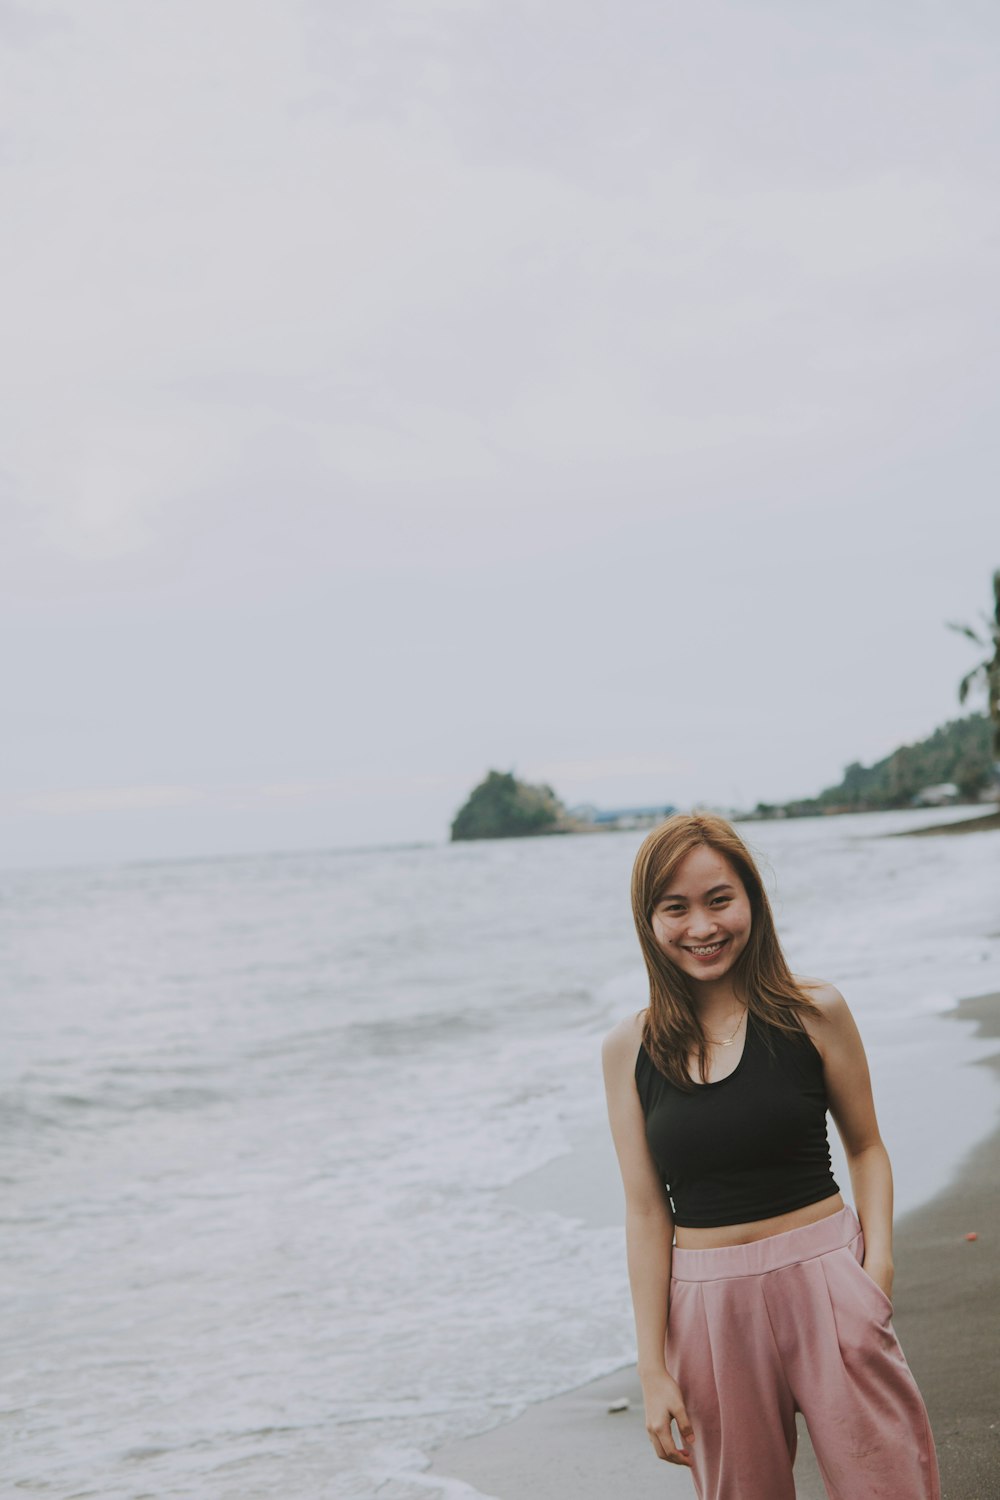 Una mujer parada en una playa